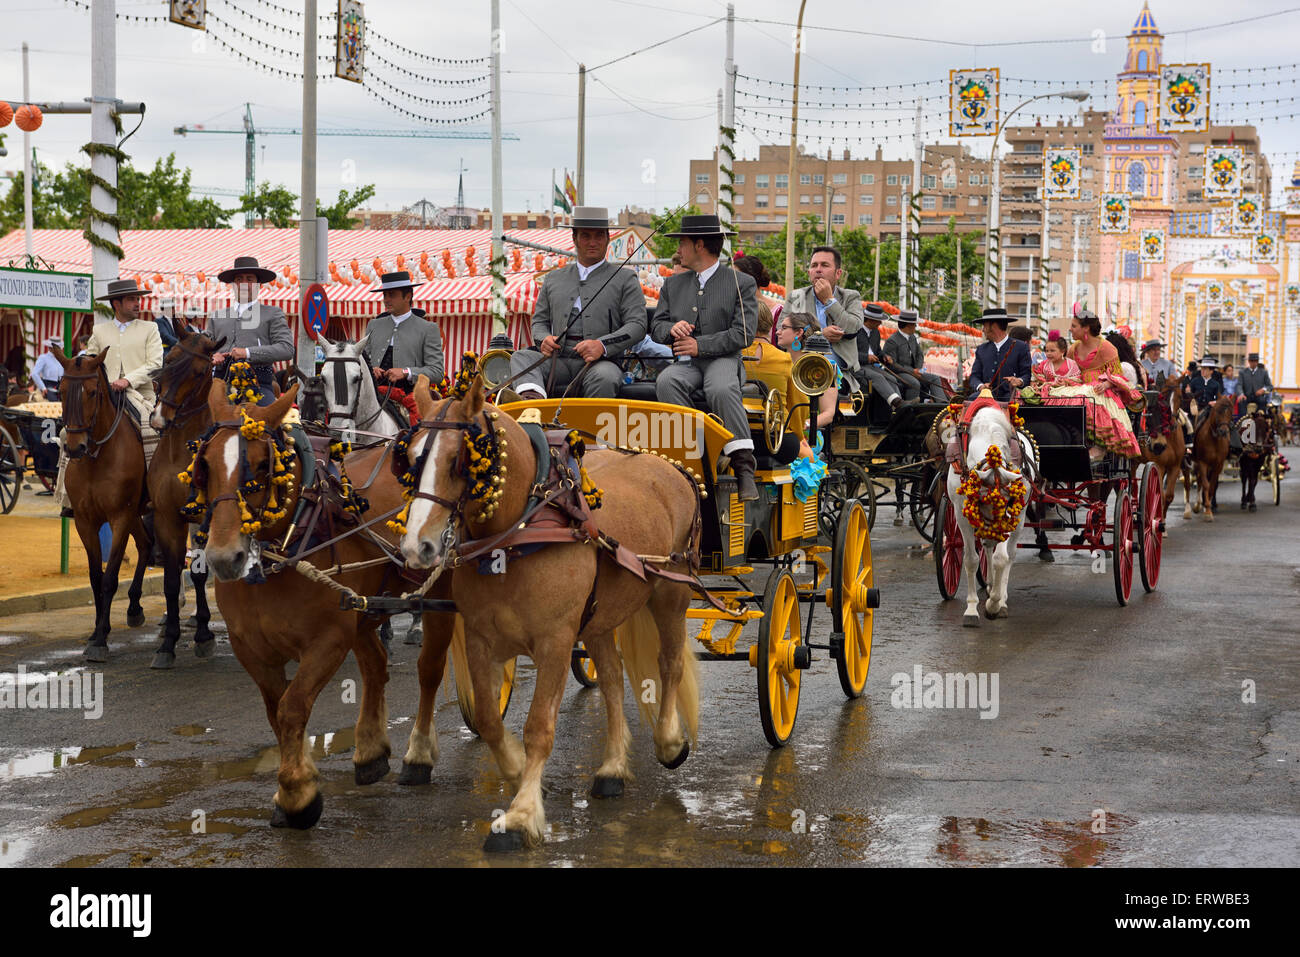 Linie des Pferdes Wagen mit Familien und Fahrer auf der Main Gate 2015 Sevilla April Messe Stockfoto